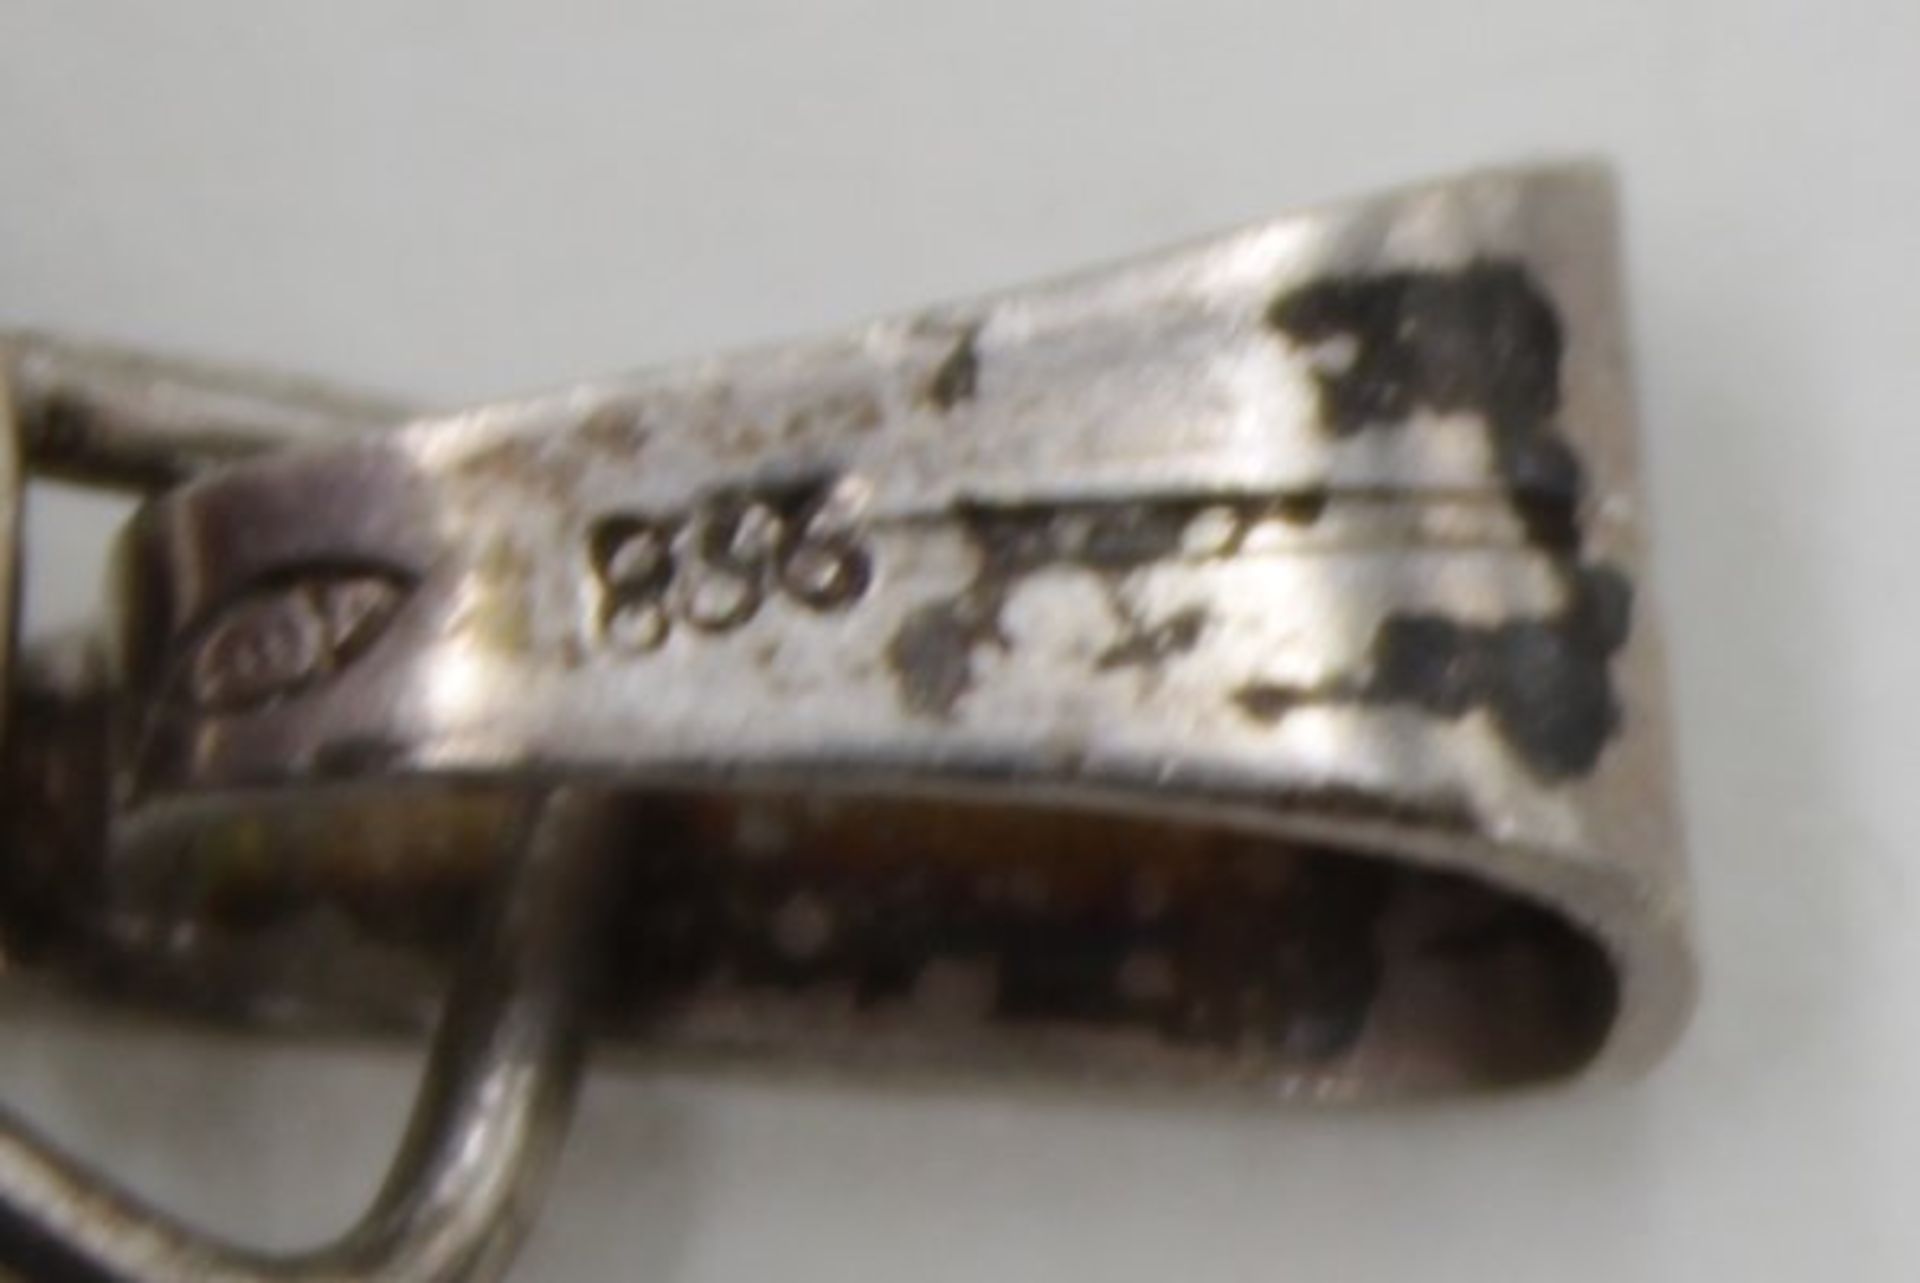 Anhänger mit Bersteincabuchon, 835er Silber, Fischland, zus. 8,6gr., L-6,2cm. - Image 3 of 3